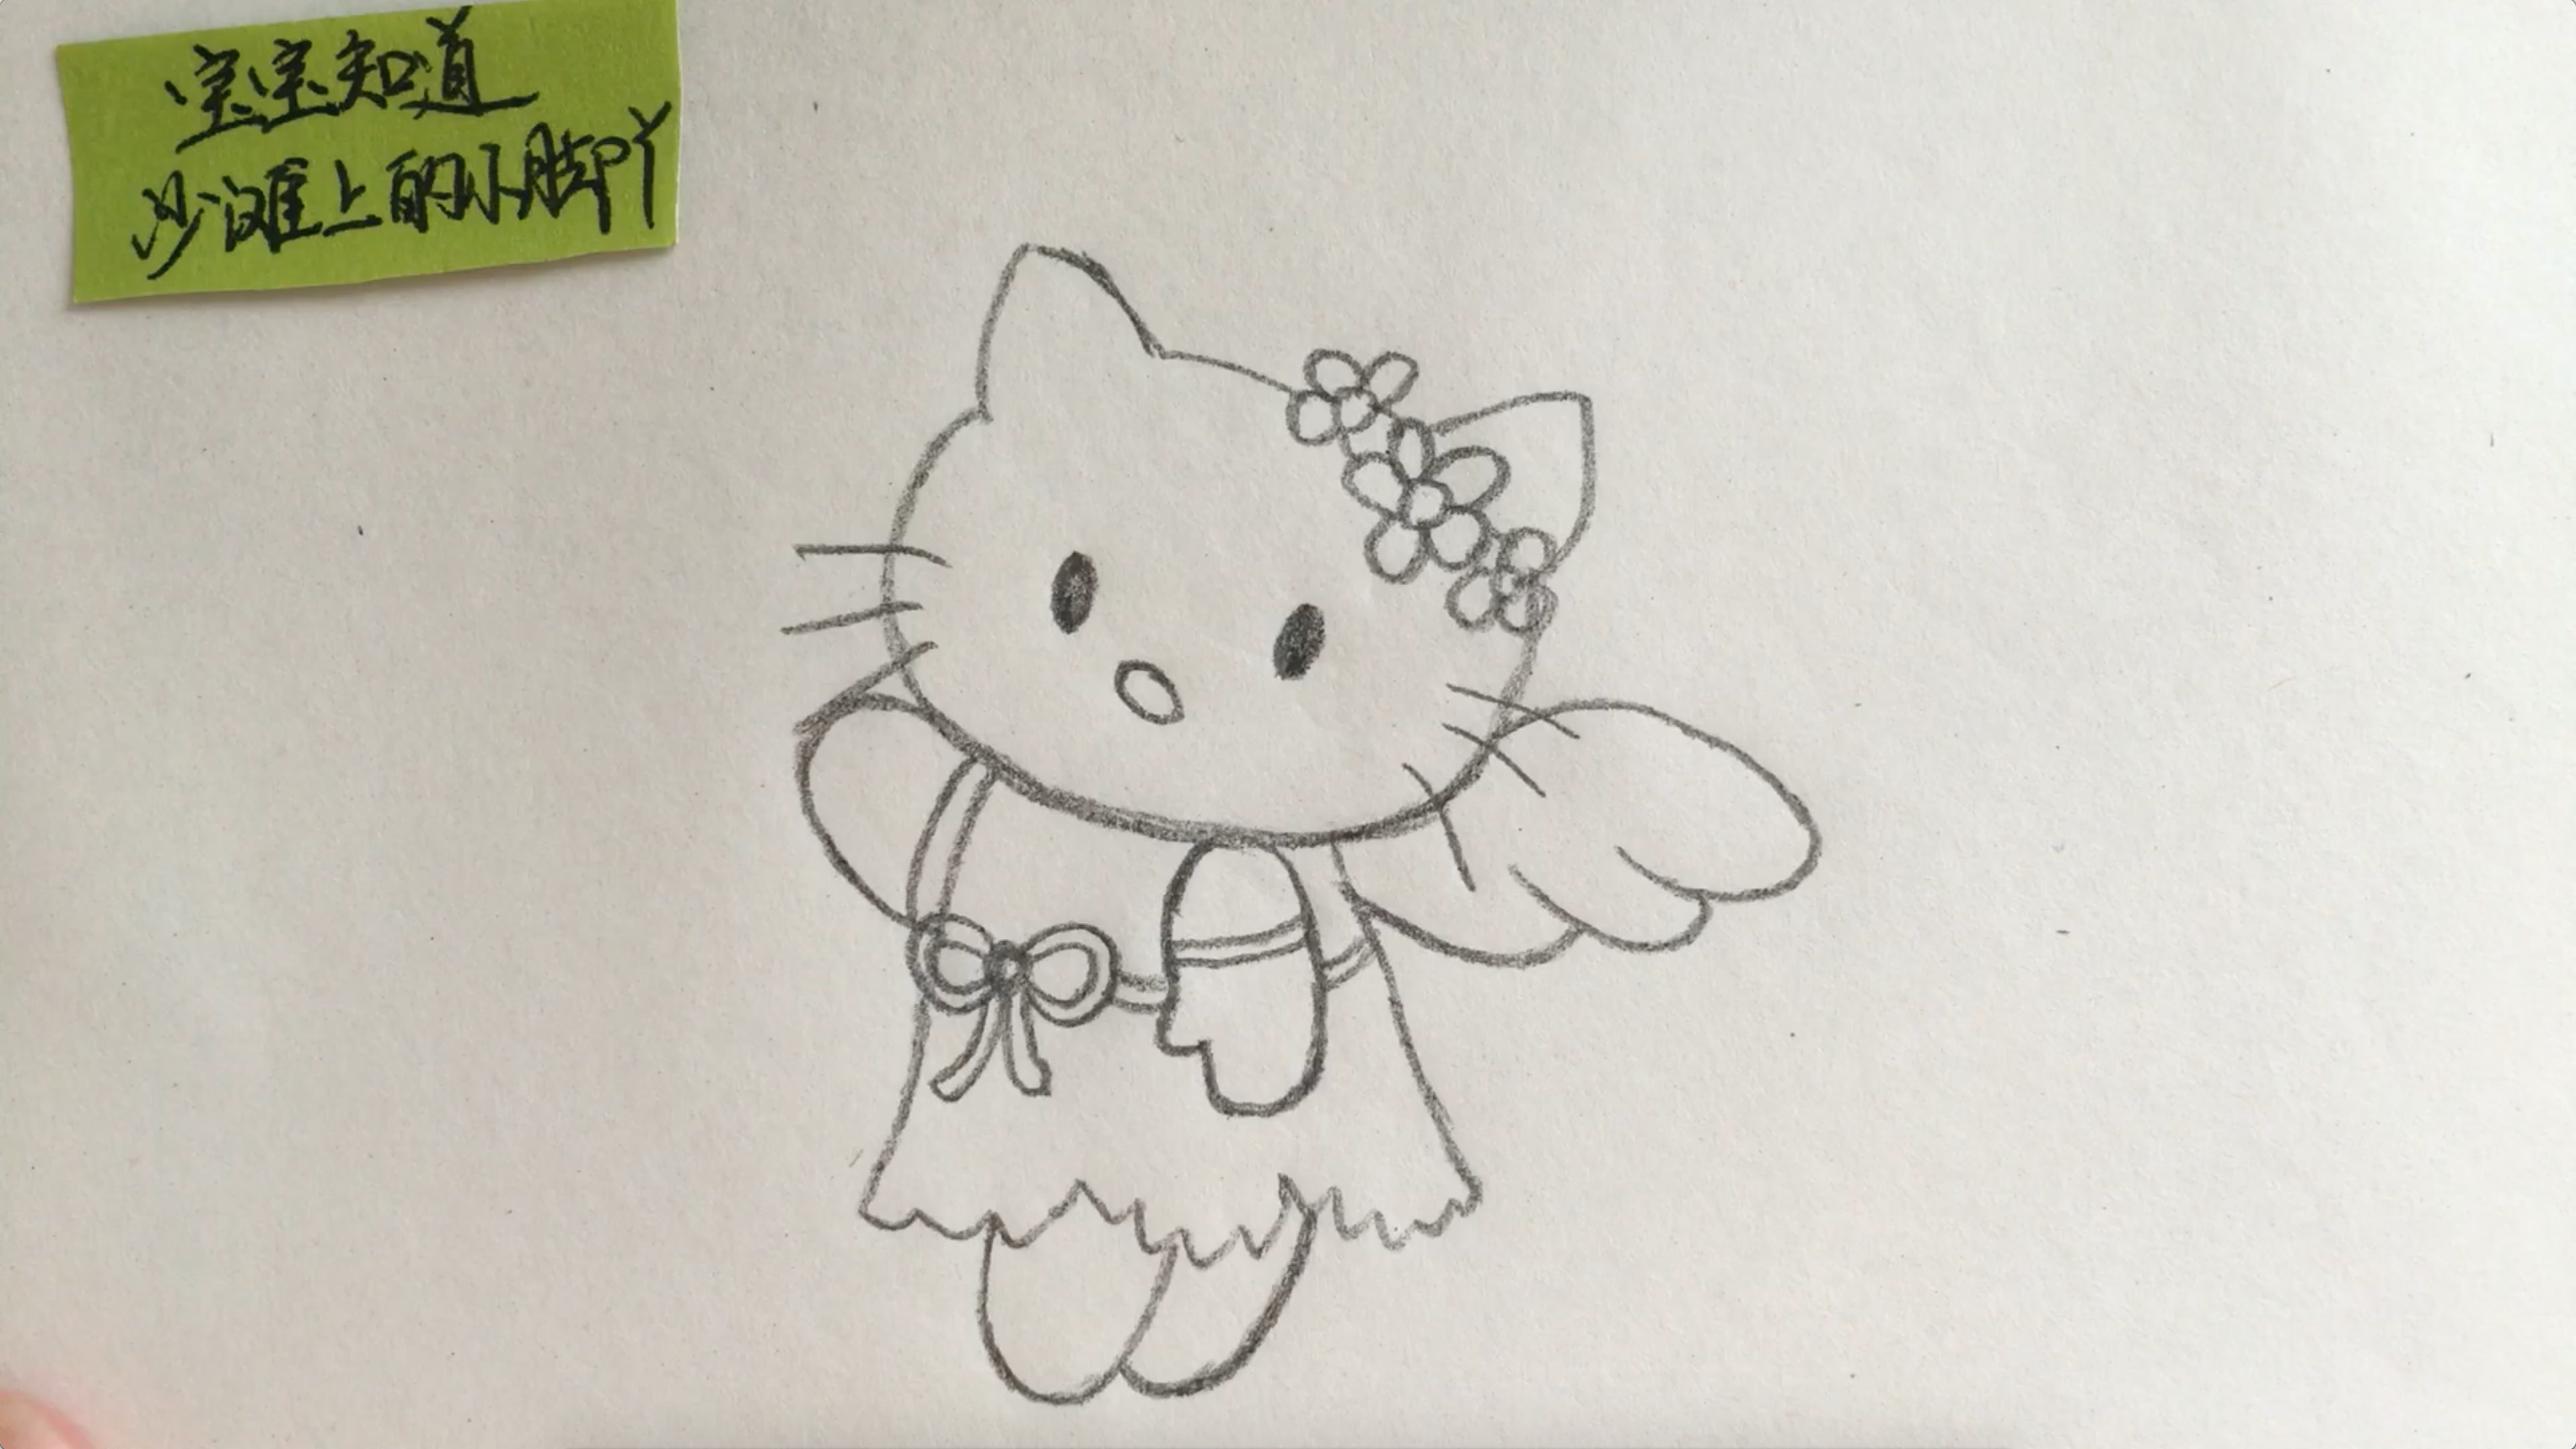 带翅膀的凯蒂猫简笔画怎么画?